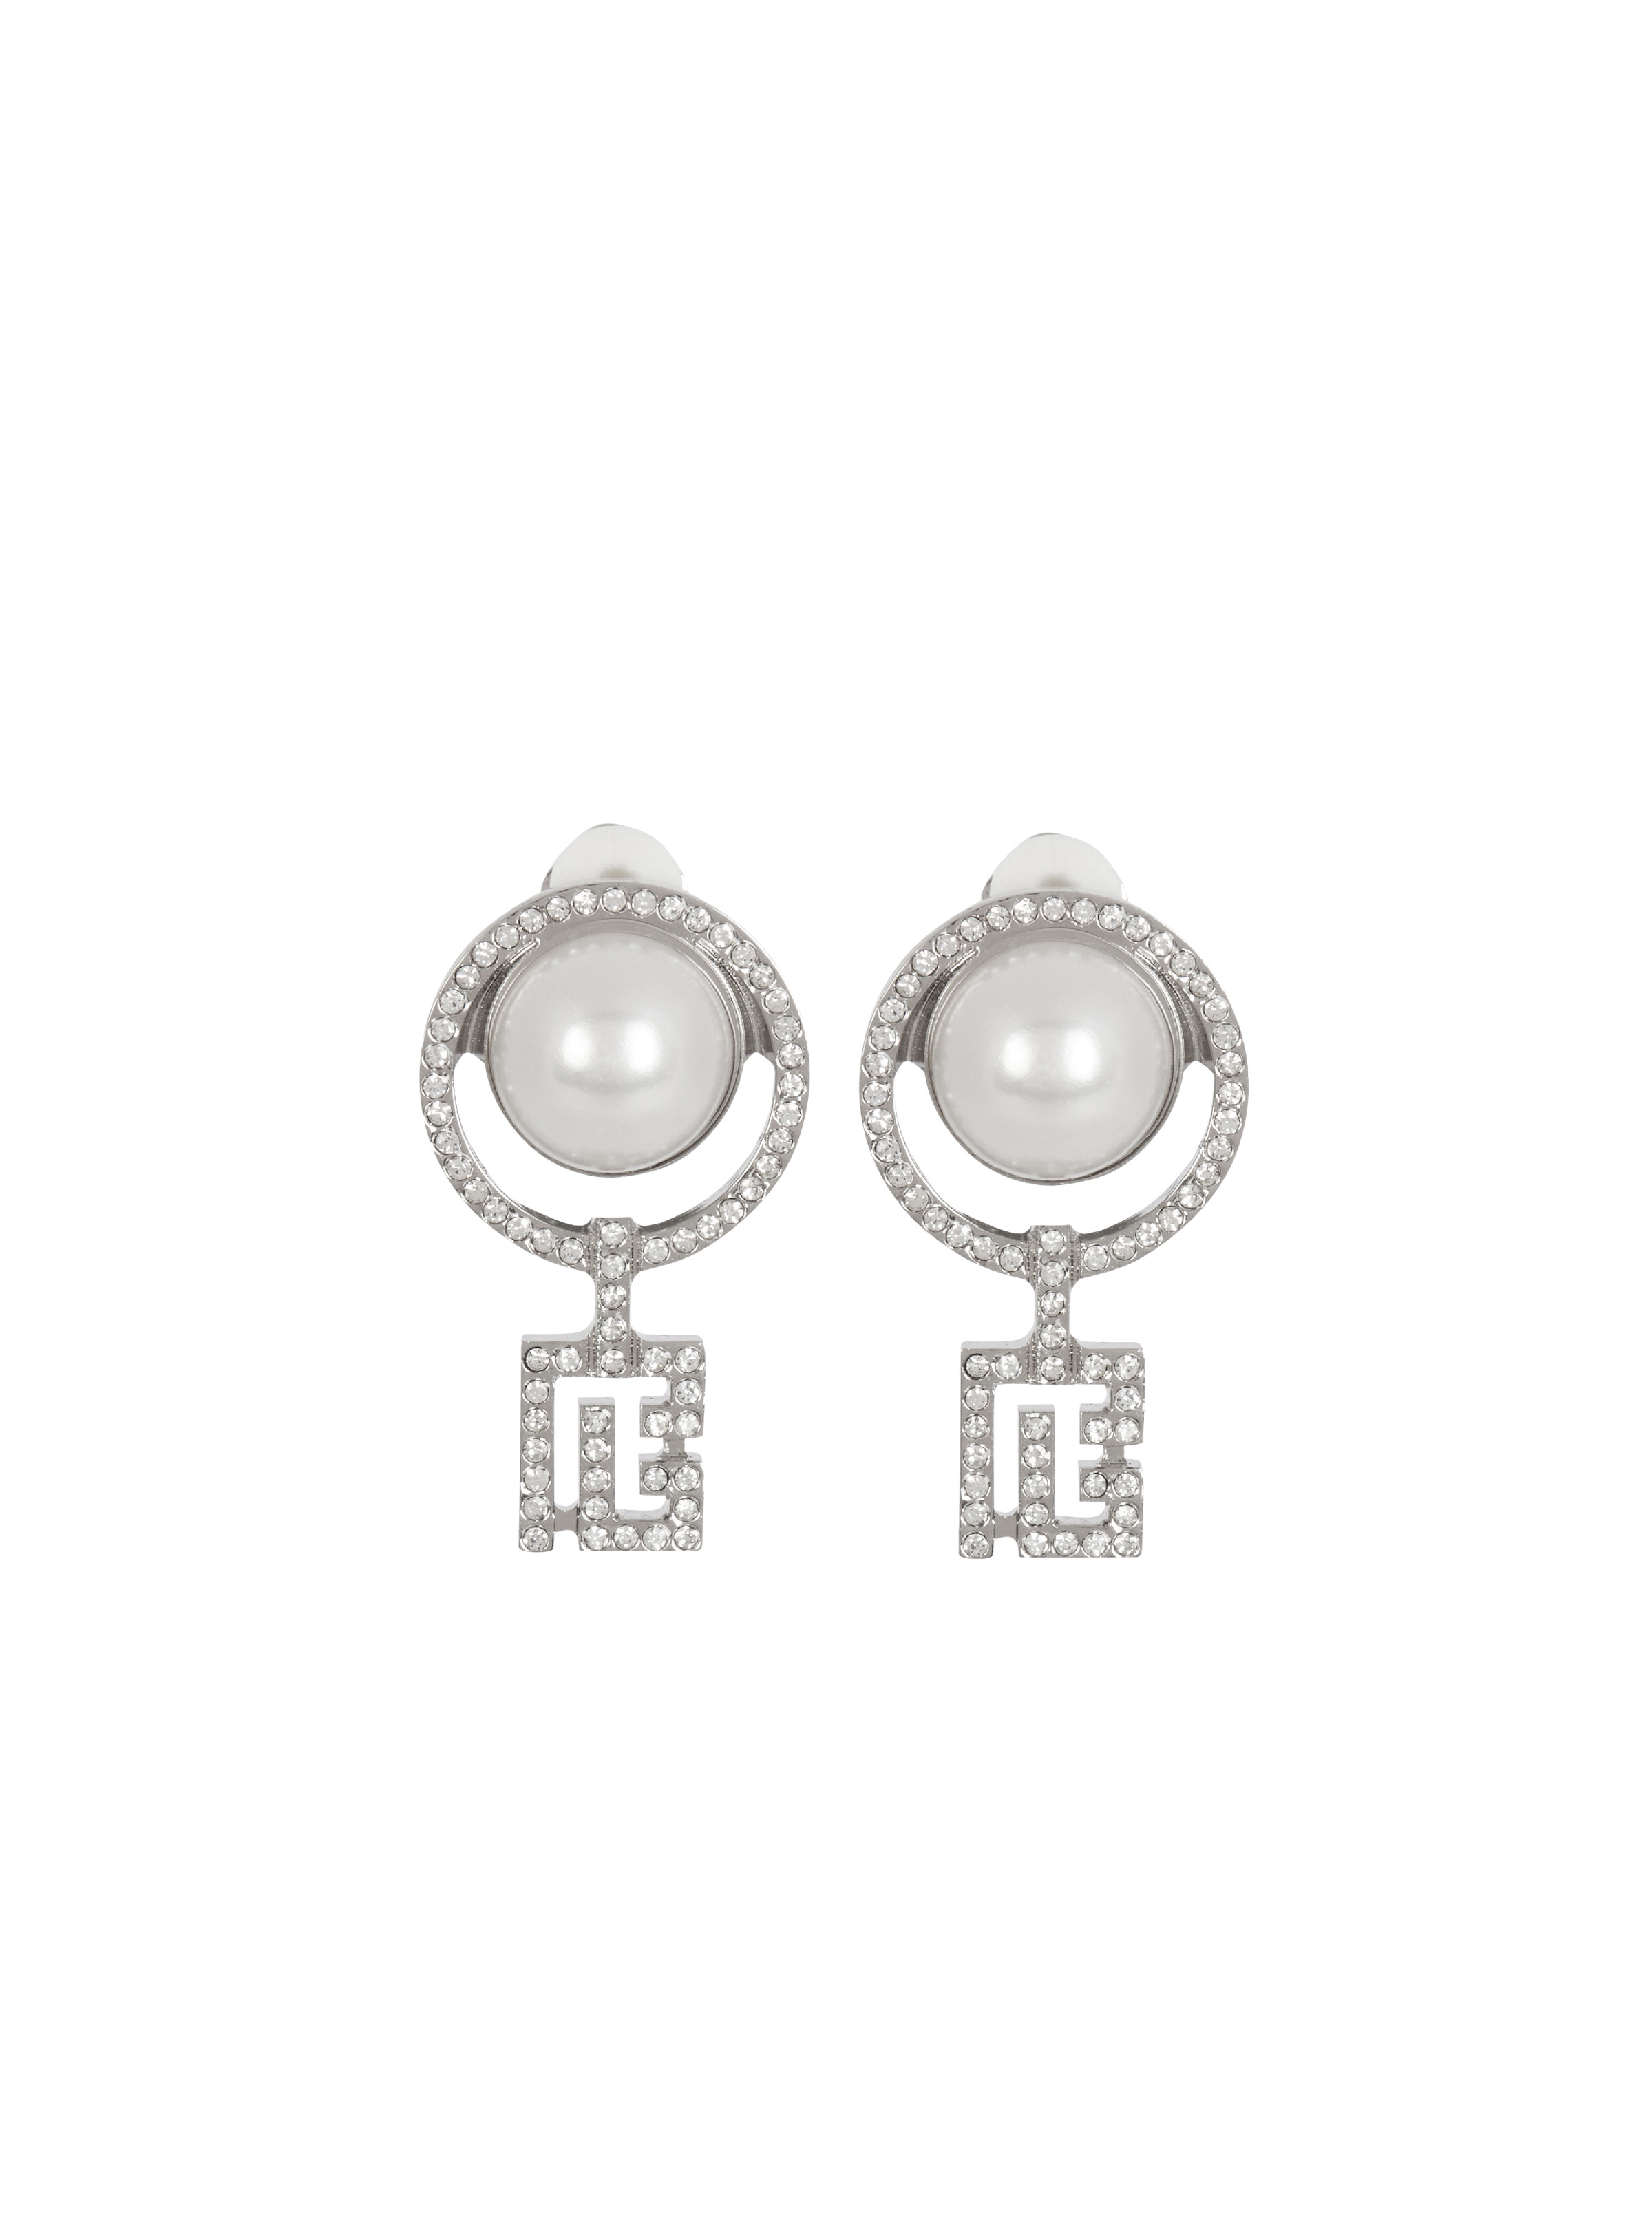 Pearl earrings with Art Deco rhinestones - 1